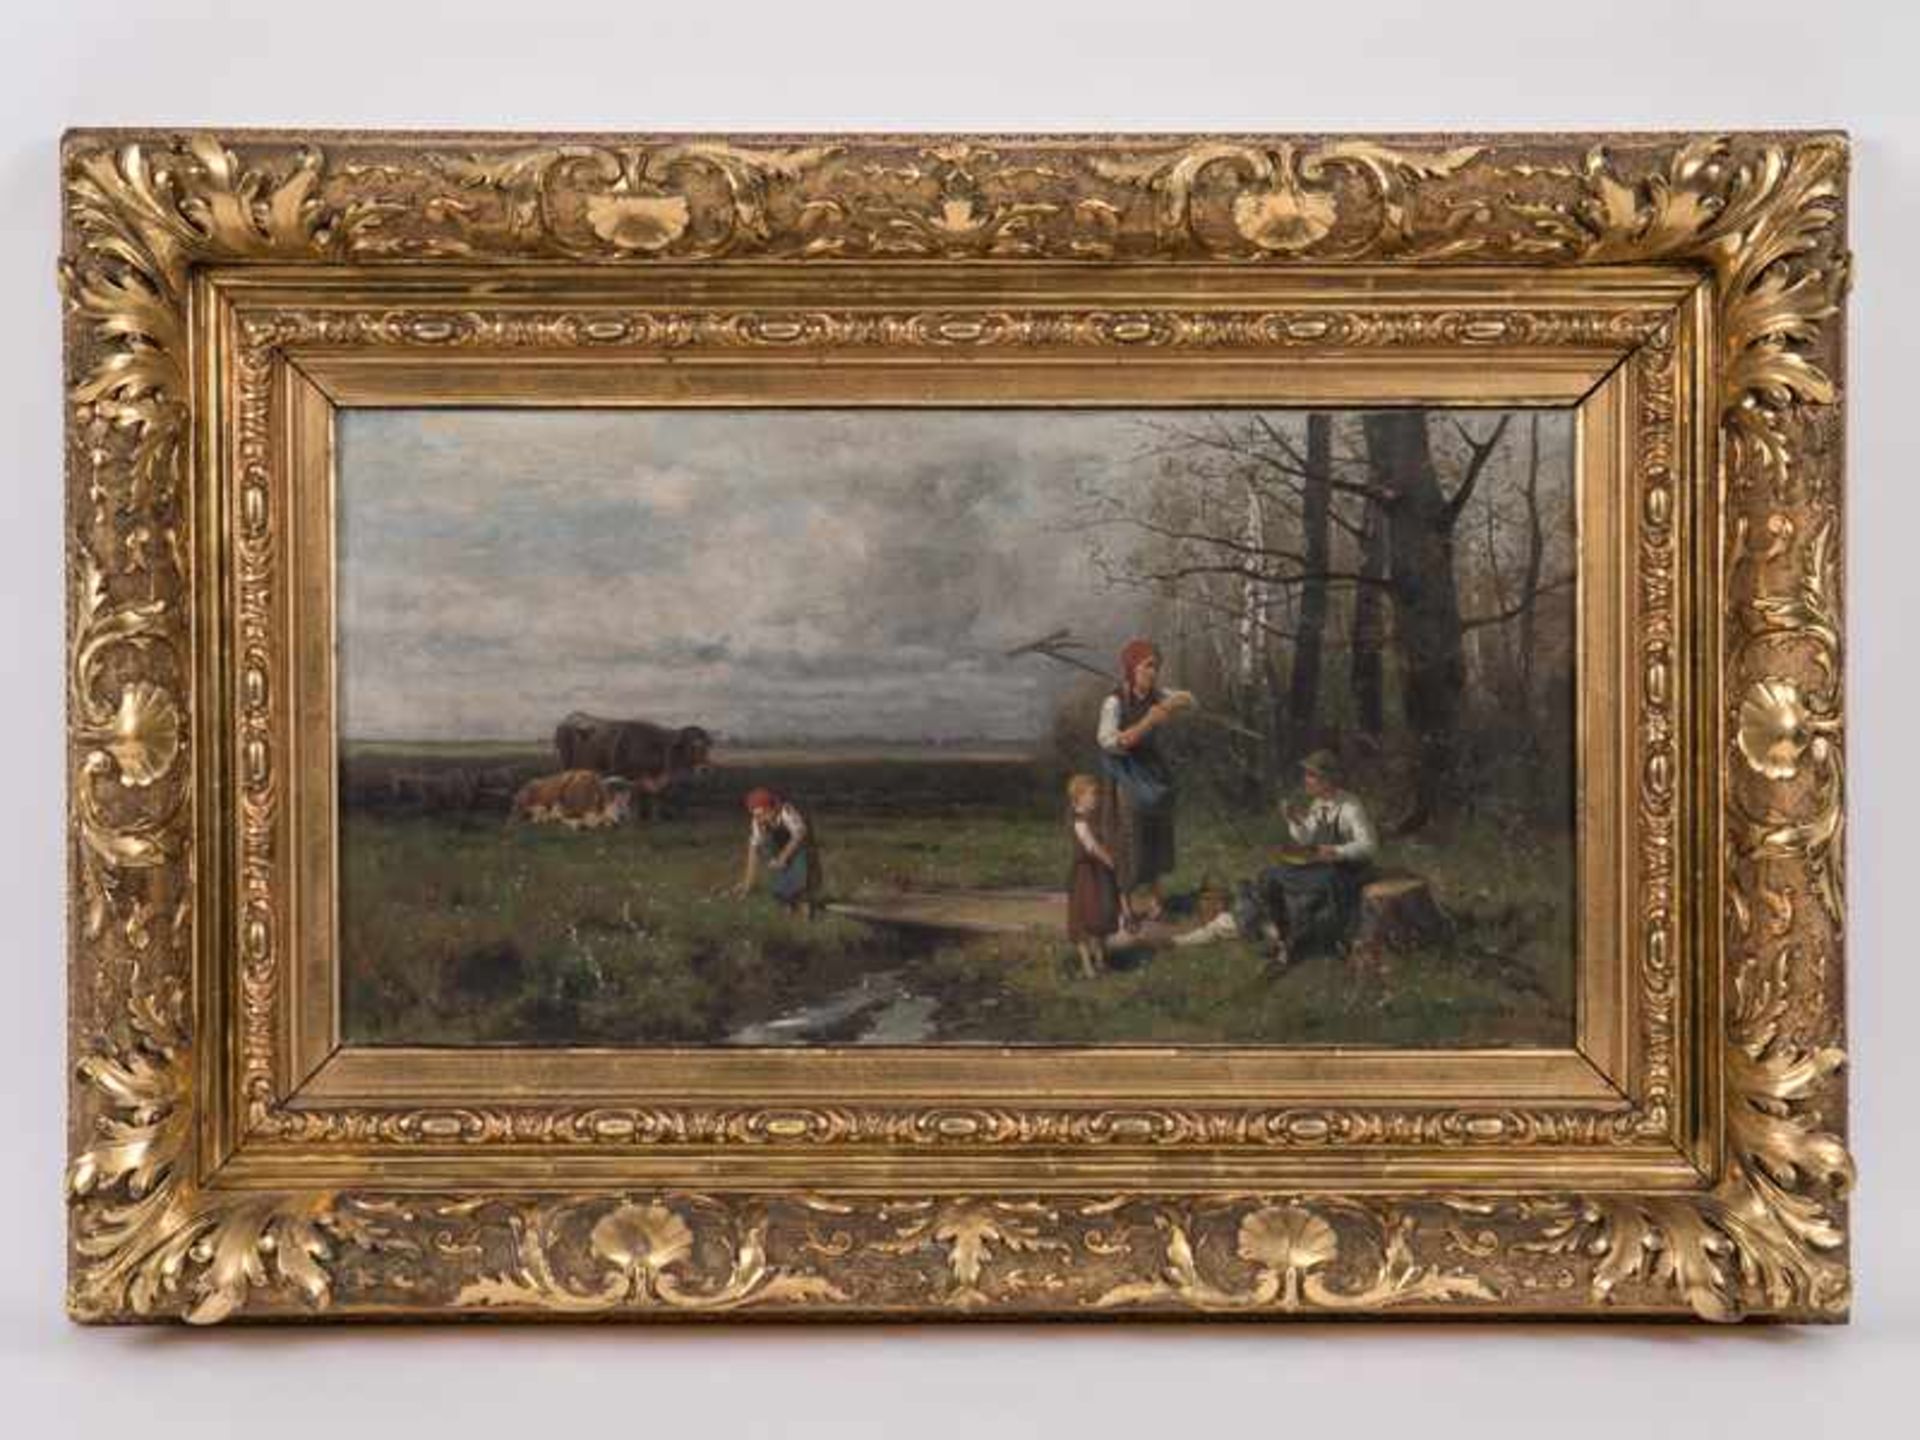 Meissner, Ernst Adolf (1837 - 1902). Öl auf Leinwand; "Rast am Feldrand". Landschaftsmotiv mit